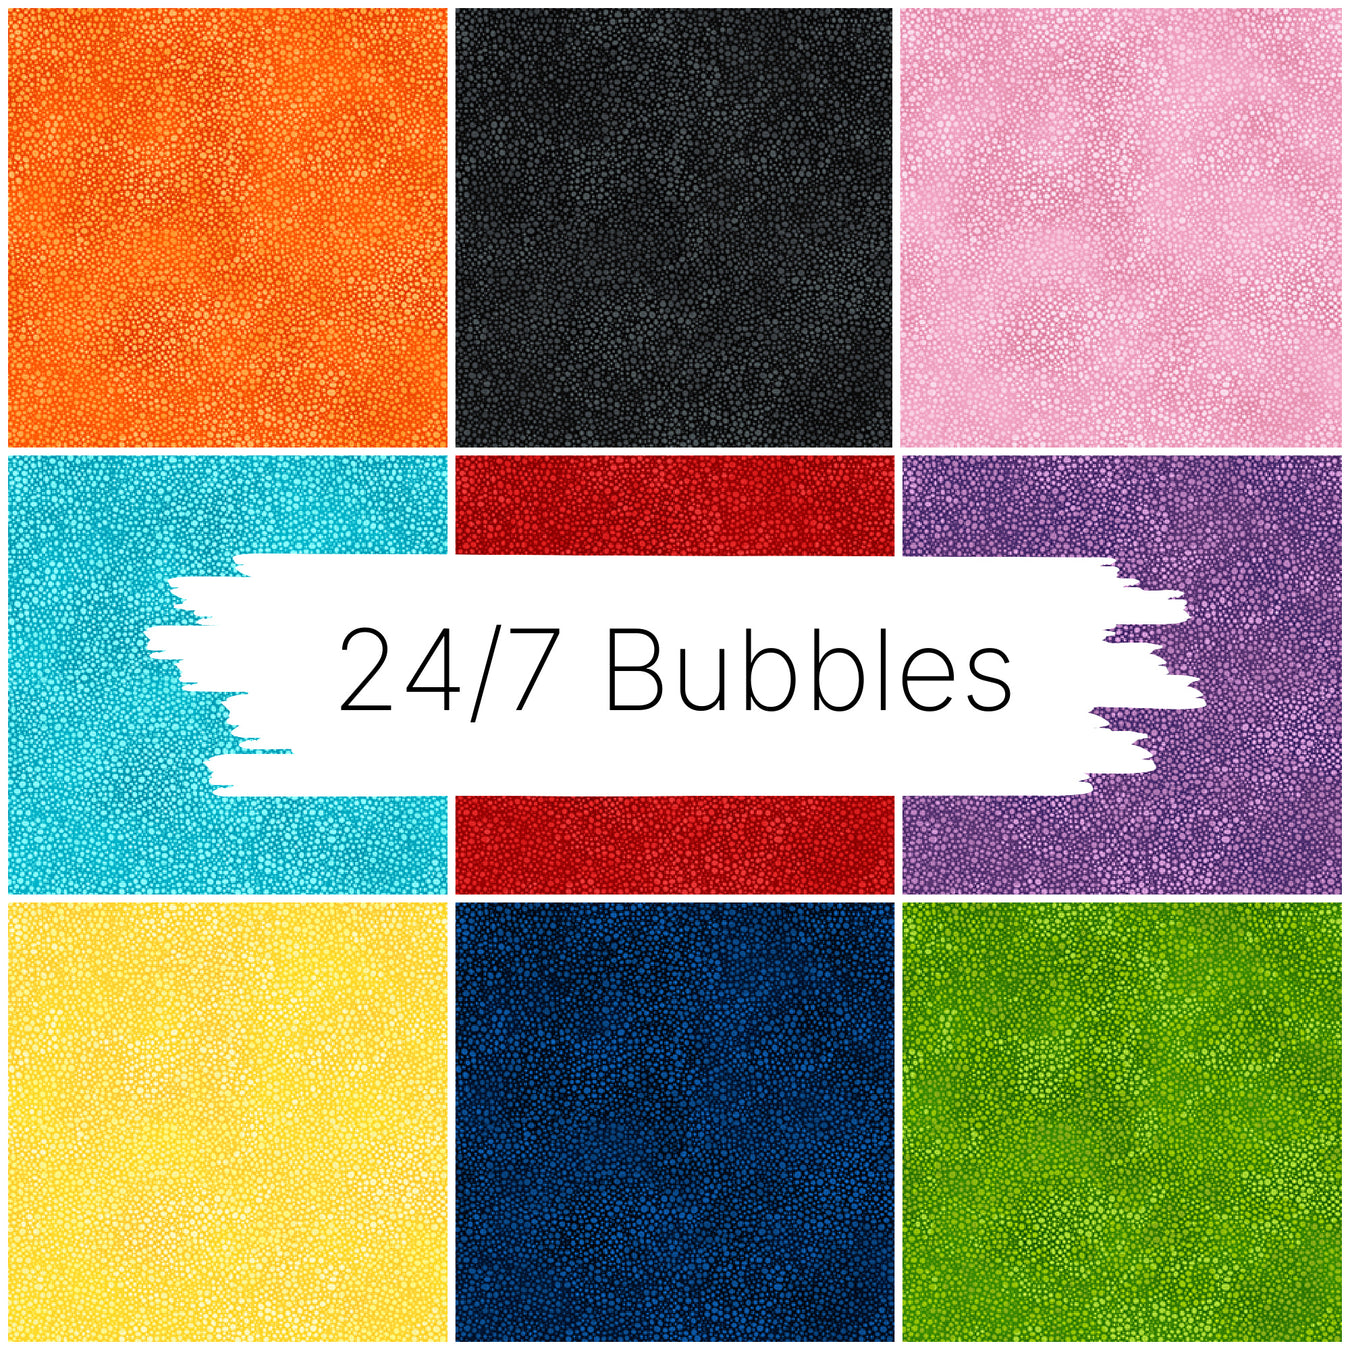 24/7: Bubbles